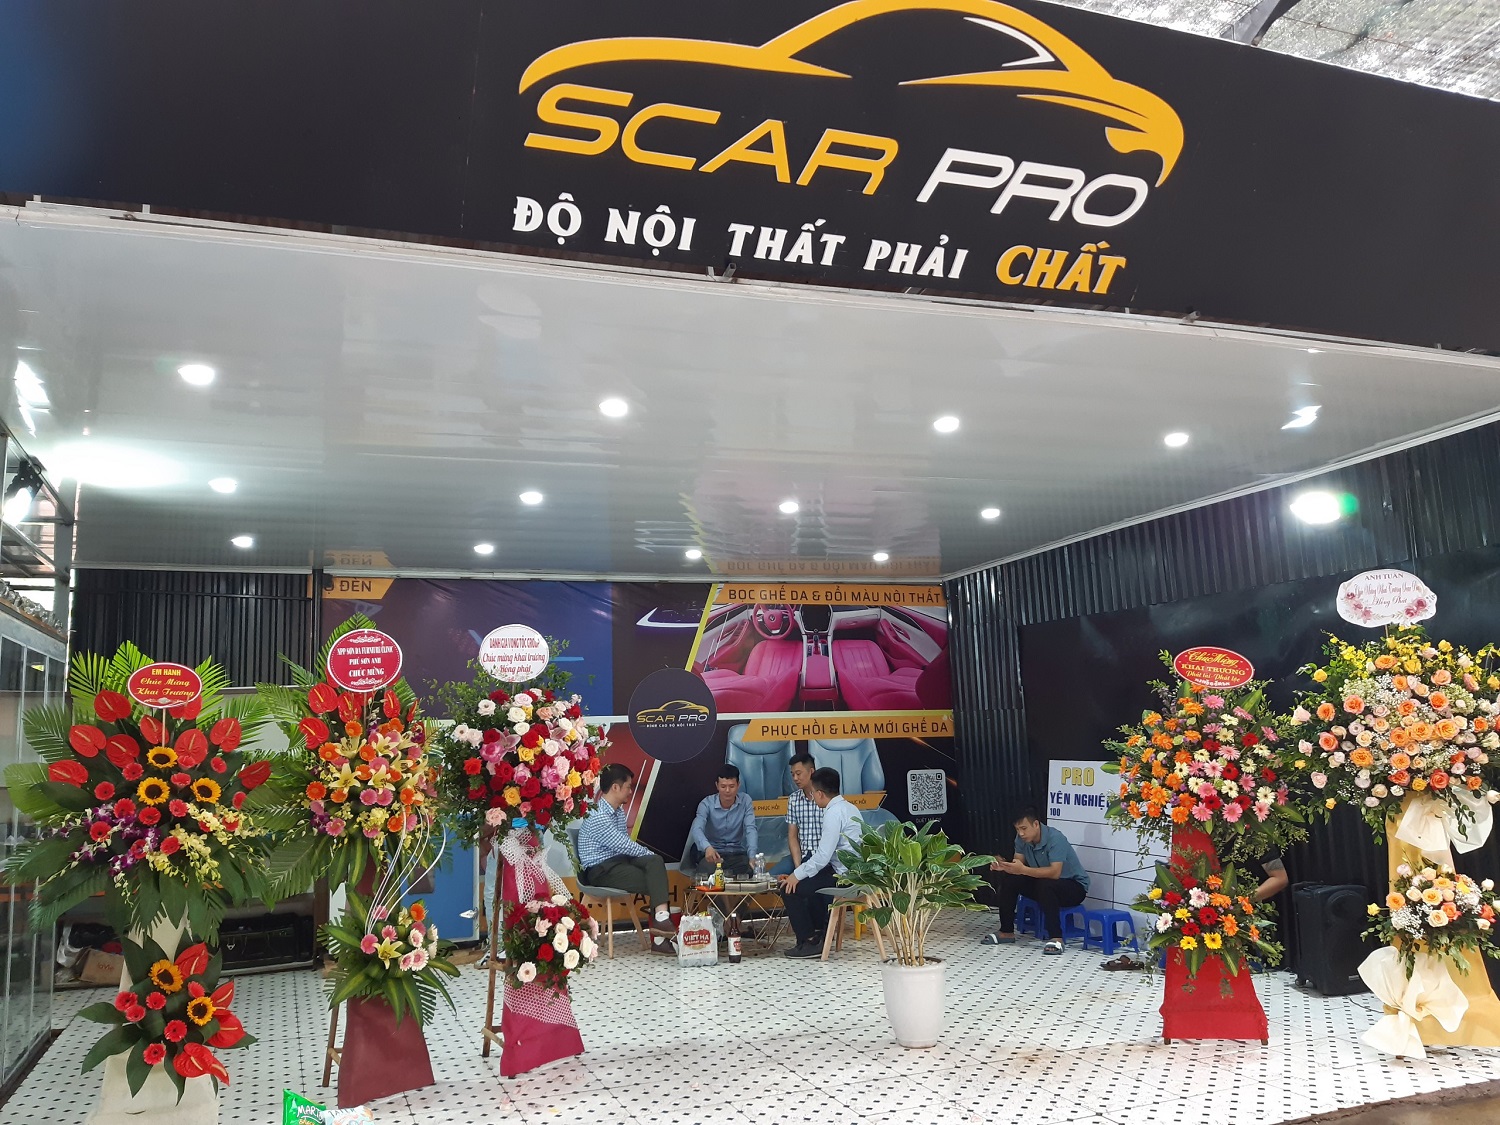 Hệ thống độ nội thất ô tô chuyên nghiệp Scar Pro khai trương cơ sở thứ 3 tại Hà Nội